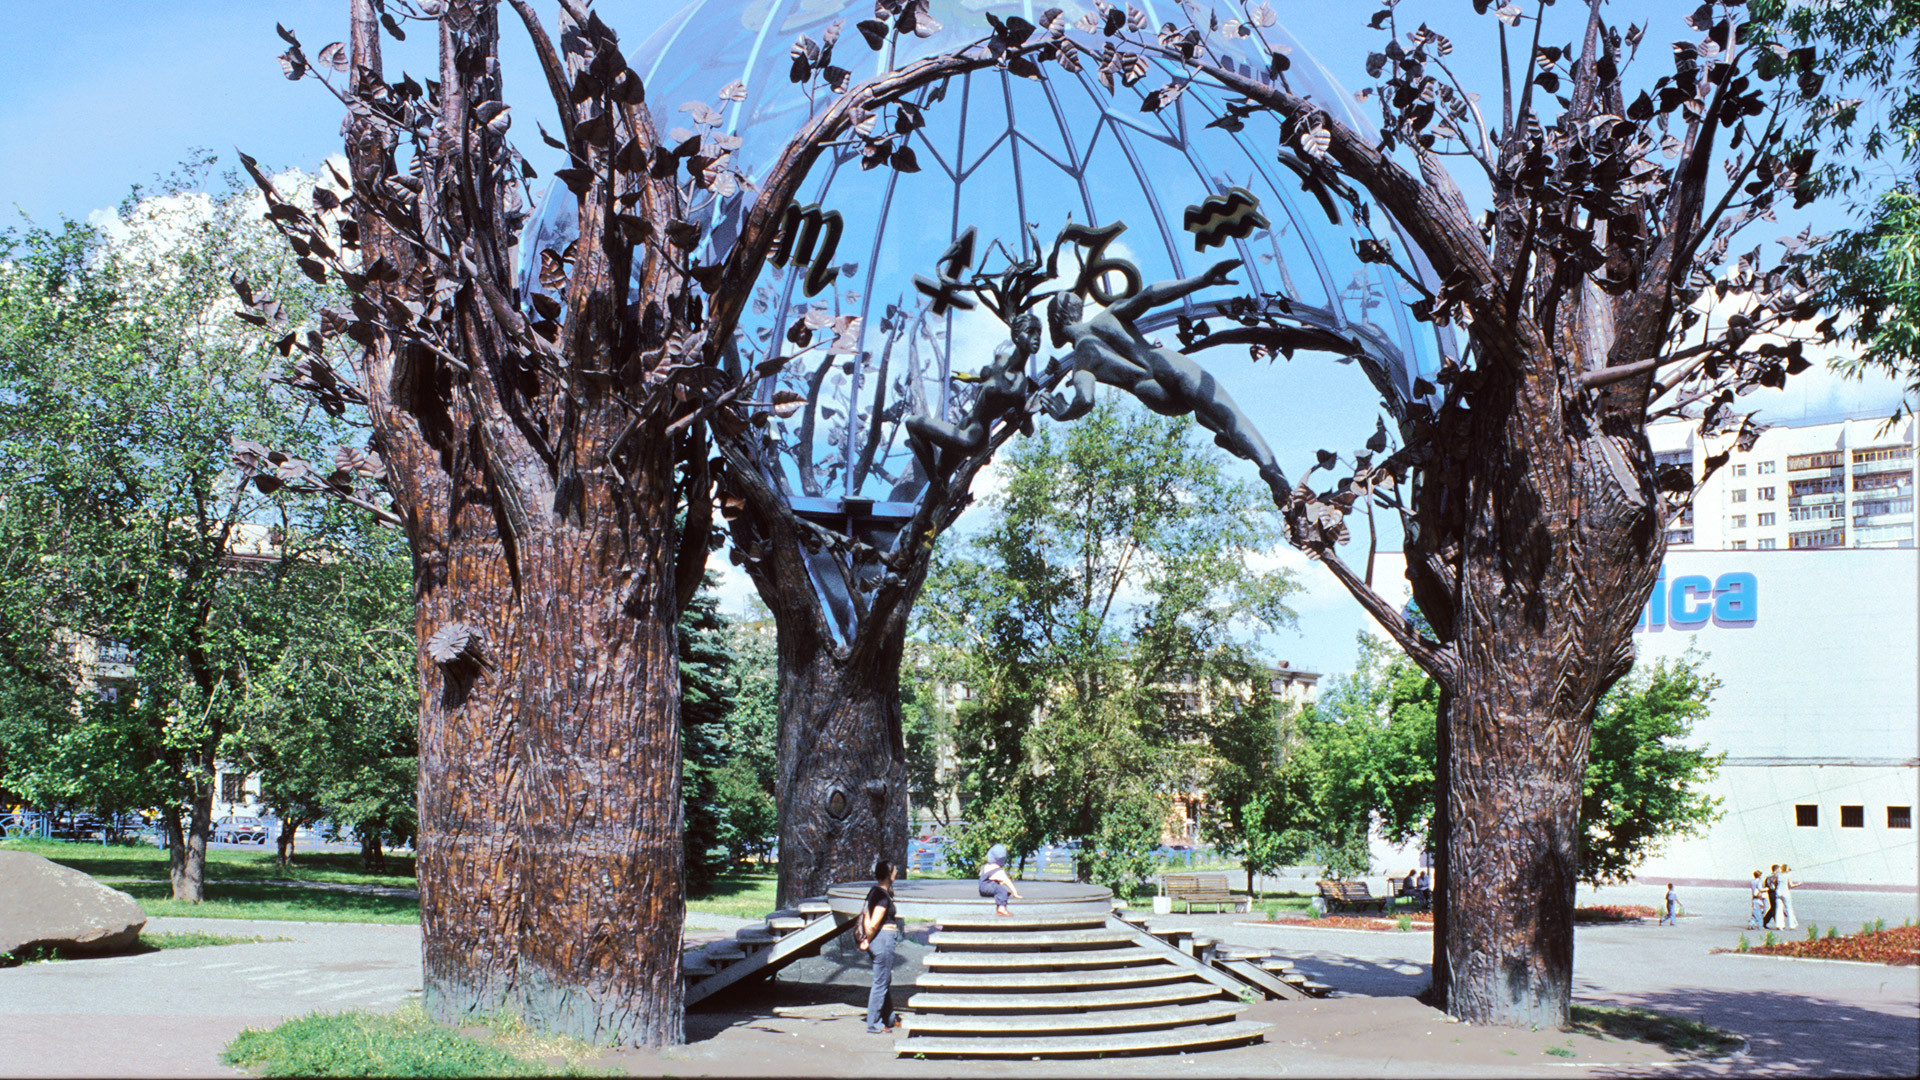 Tcheliabinsk, « Sphere of Love », de Viktor Mitrochine. Érigée en 2000, cette sculpture consiste en quatre arbres en bronze entourant deux silhouettes s'embrassant sous un dôme en verre bleu d'Italie. Elle est devenue l'emblème bien-aimé de la ville. Photo : William Brumfield 13 juillet 2003 